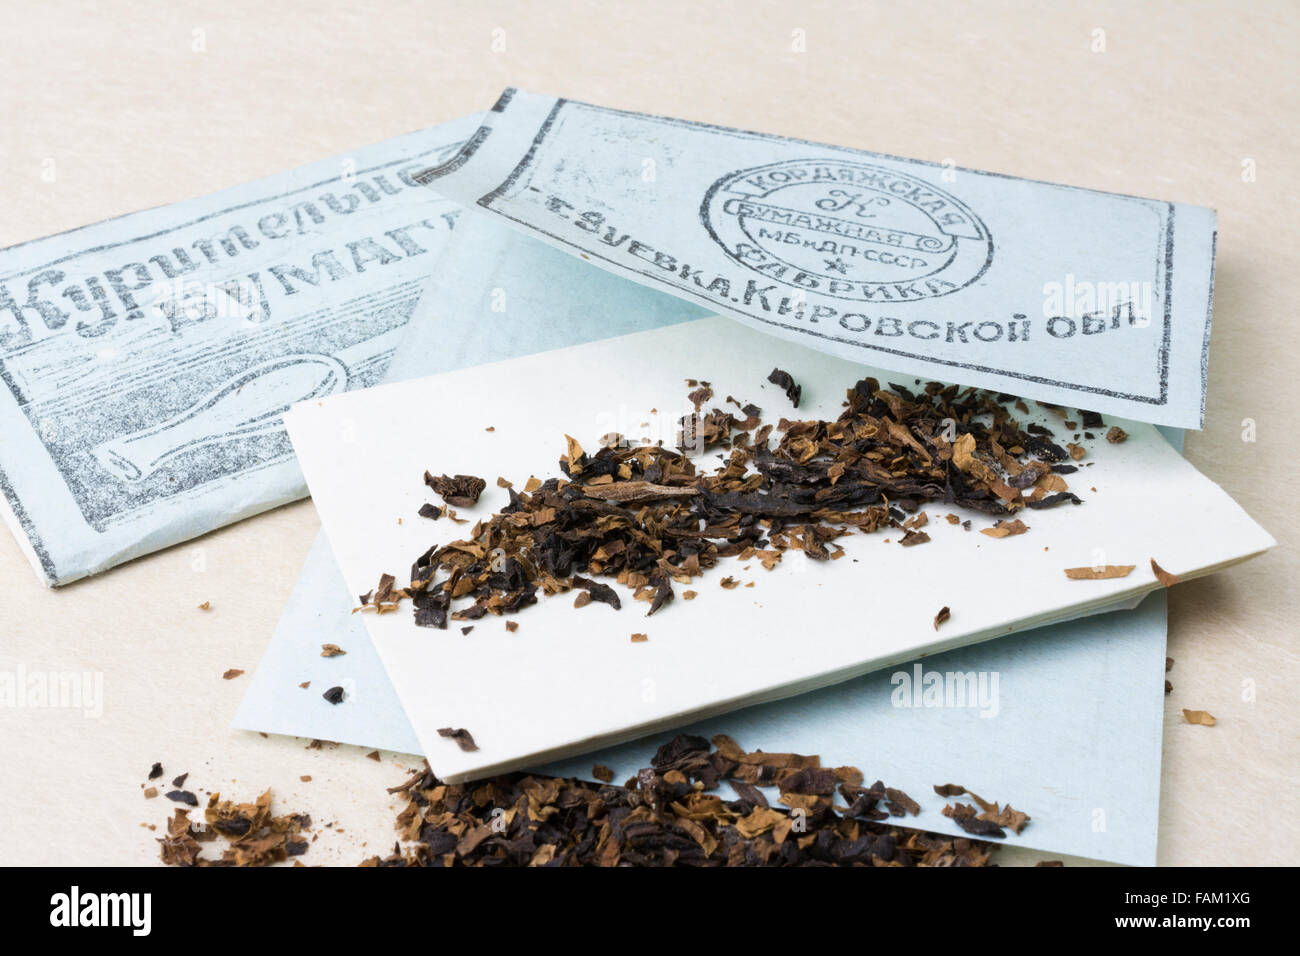 Paquet de papier à cigarettes de l'armée rouge soviétique de la Seconde Guerre mondiale avec un peu de tabac Banque D'Images